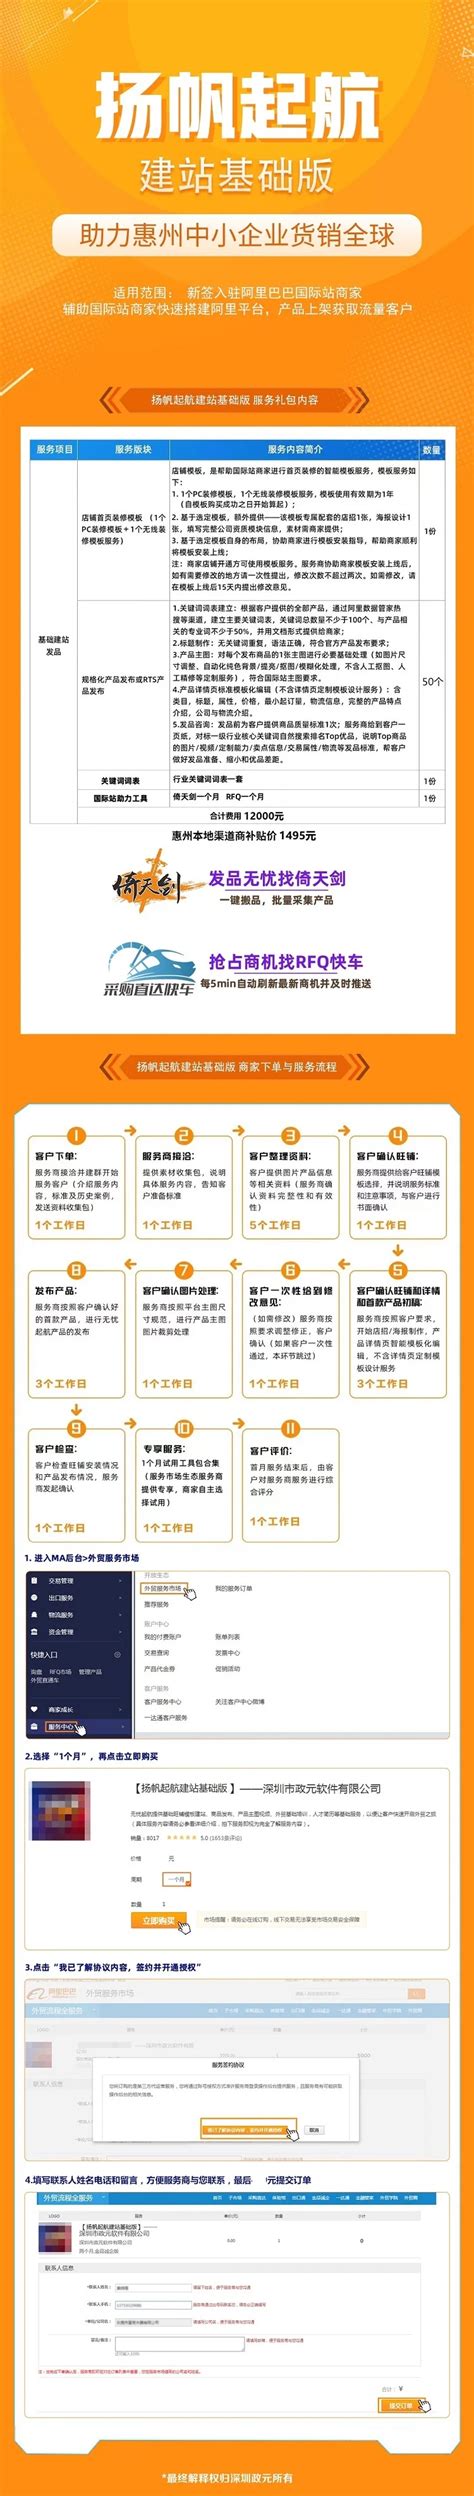 惠州市第三人民医院上线红帆OA 构建iOffice.net医院统一工作平台-广州红帆科技有限公司官方网站